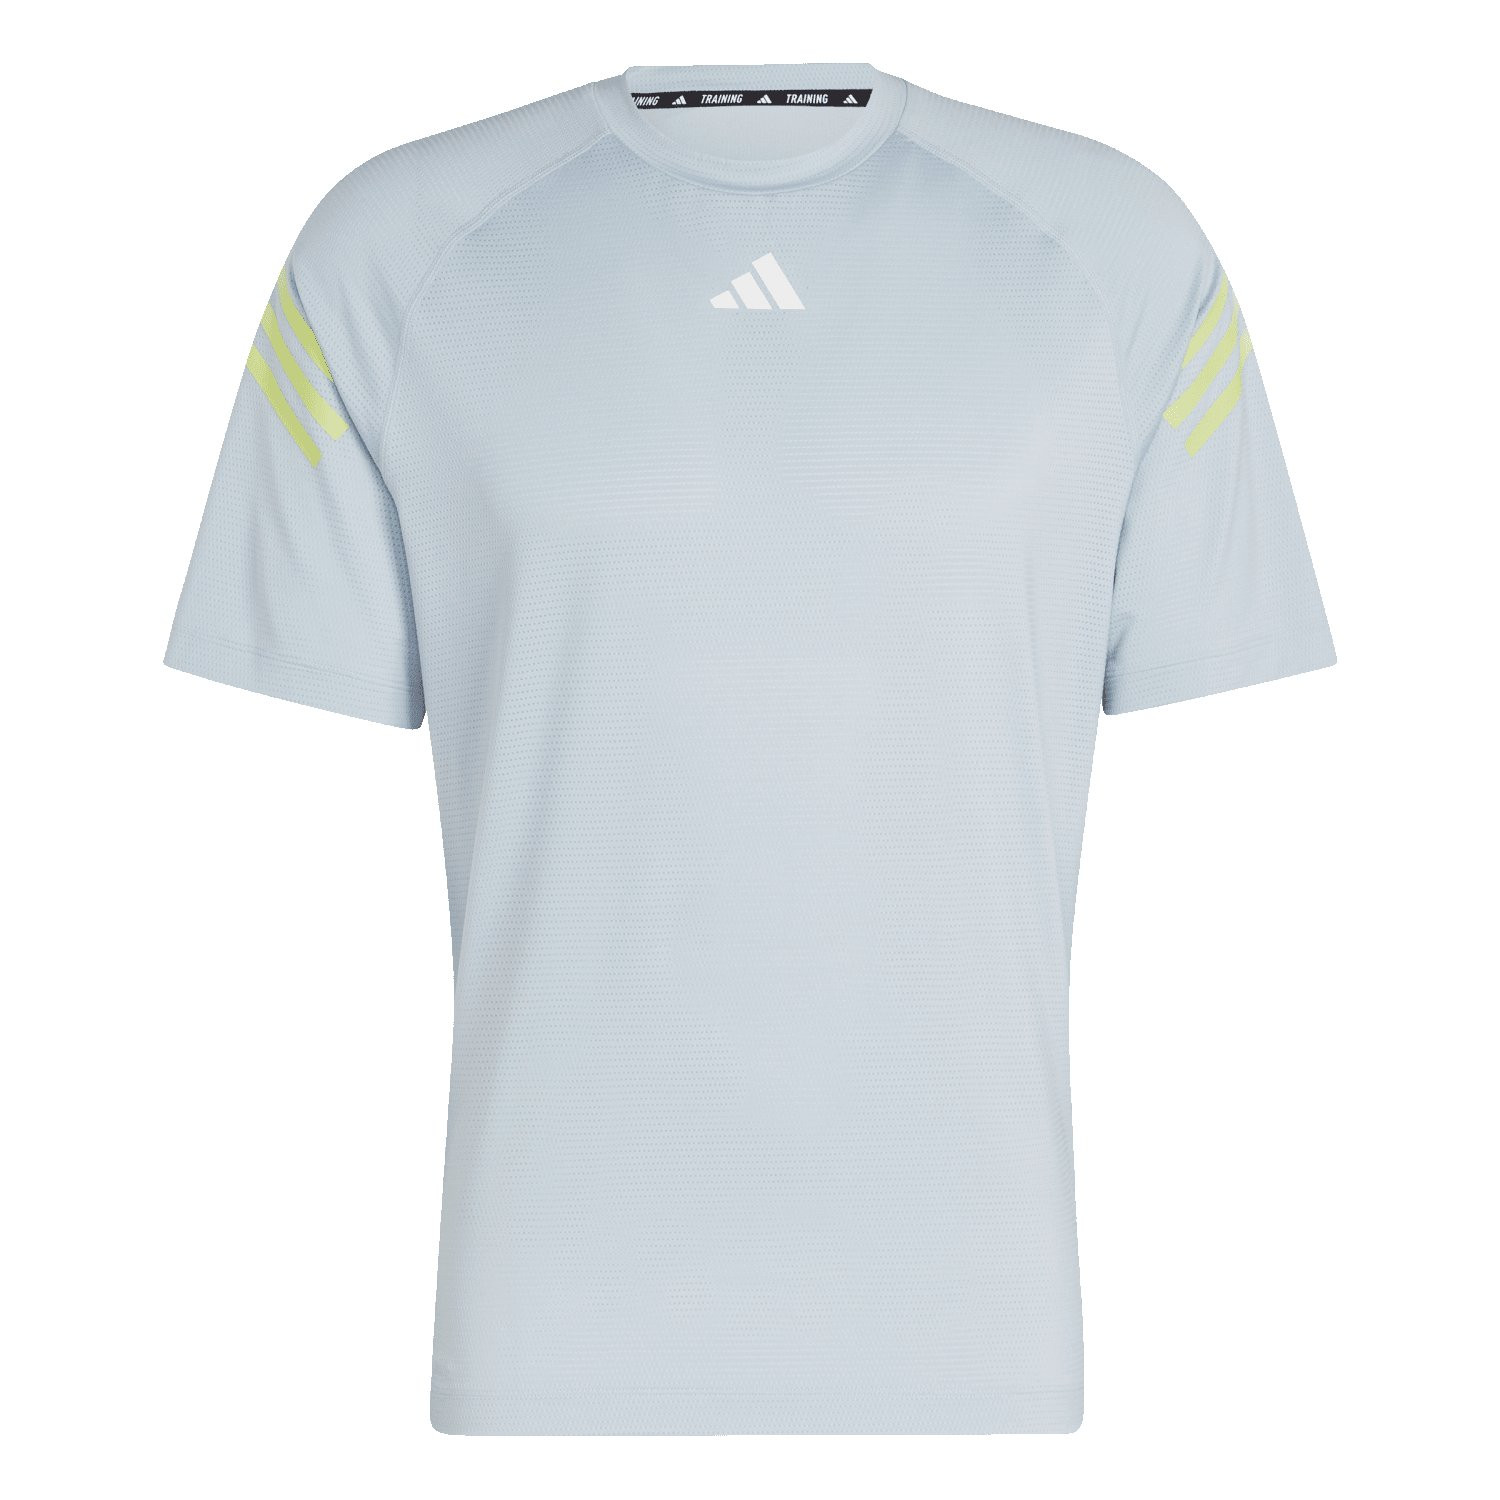 Adidas Trains Icons 3-Streifen Trainings T-Shirt